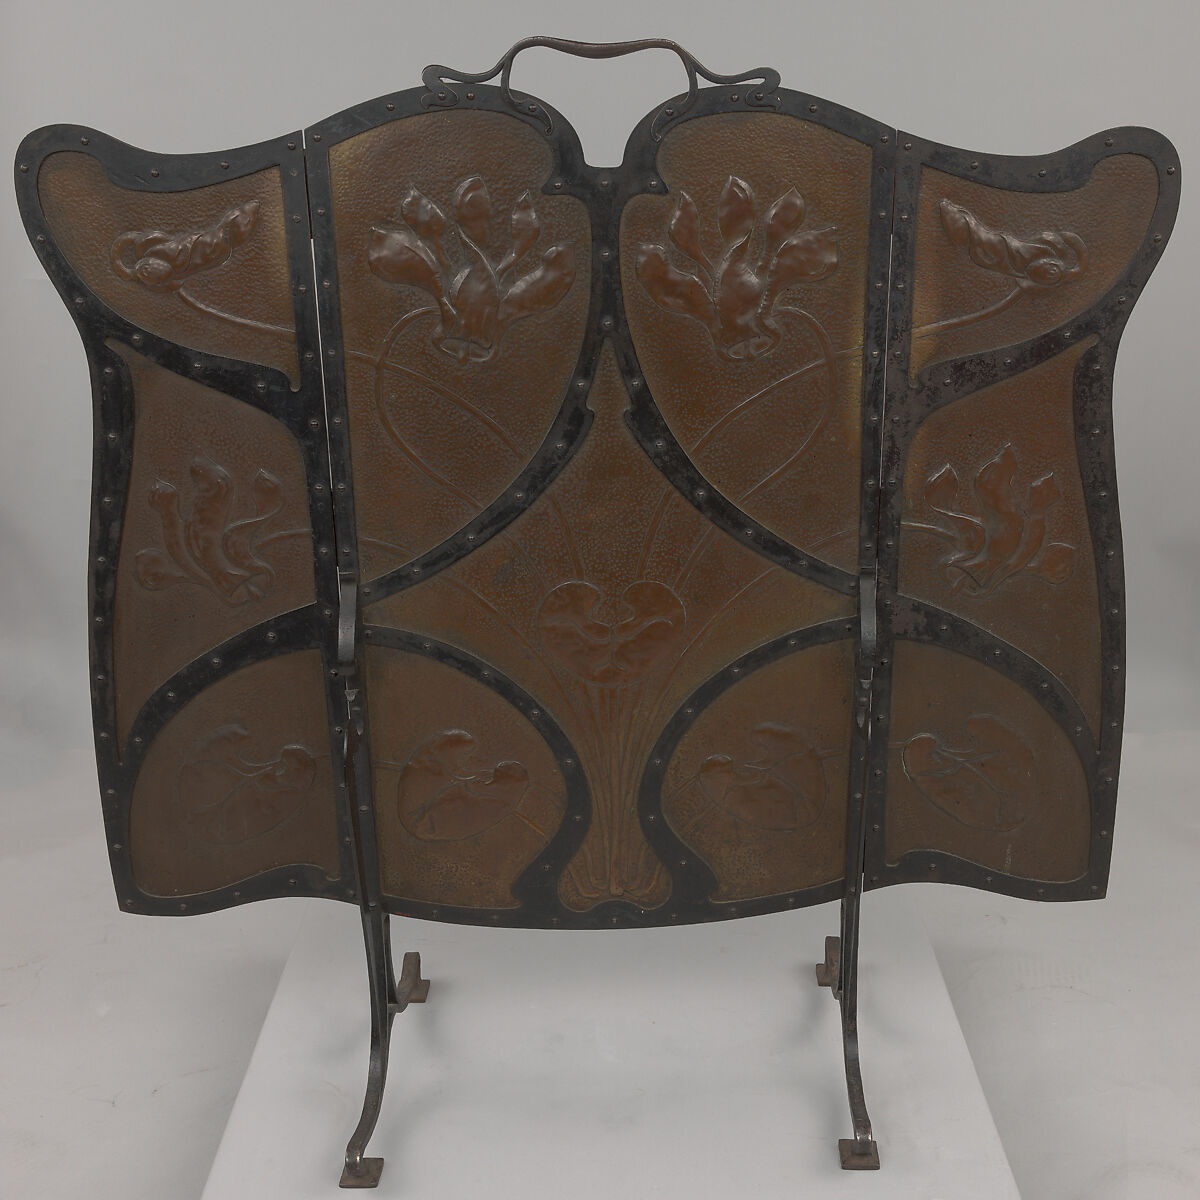 Fire screen, Gustave Serrurier-Bovy (Belgian, Liège 1858–1910 Antwerp), Iron, copper alloy 